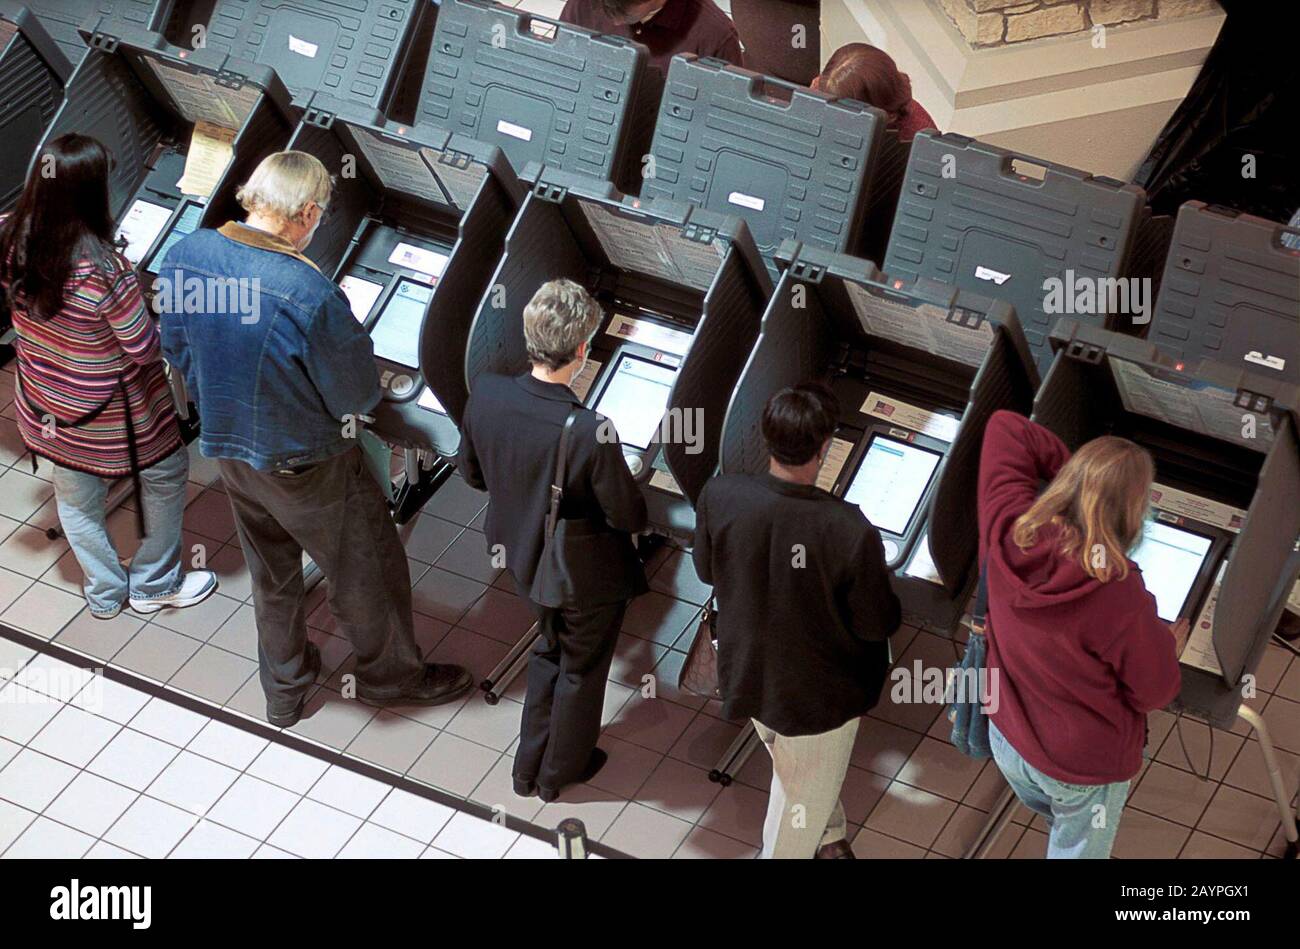 Austin, Texas: Visione generale degli elettori che usano macchine di voto elettroniche al posto di polling nel centro commerciale. Novembre 2002 ©Bob Daemmrich Foto Stock